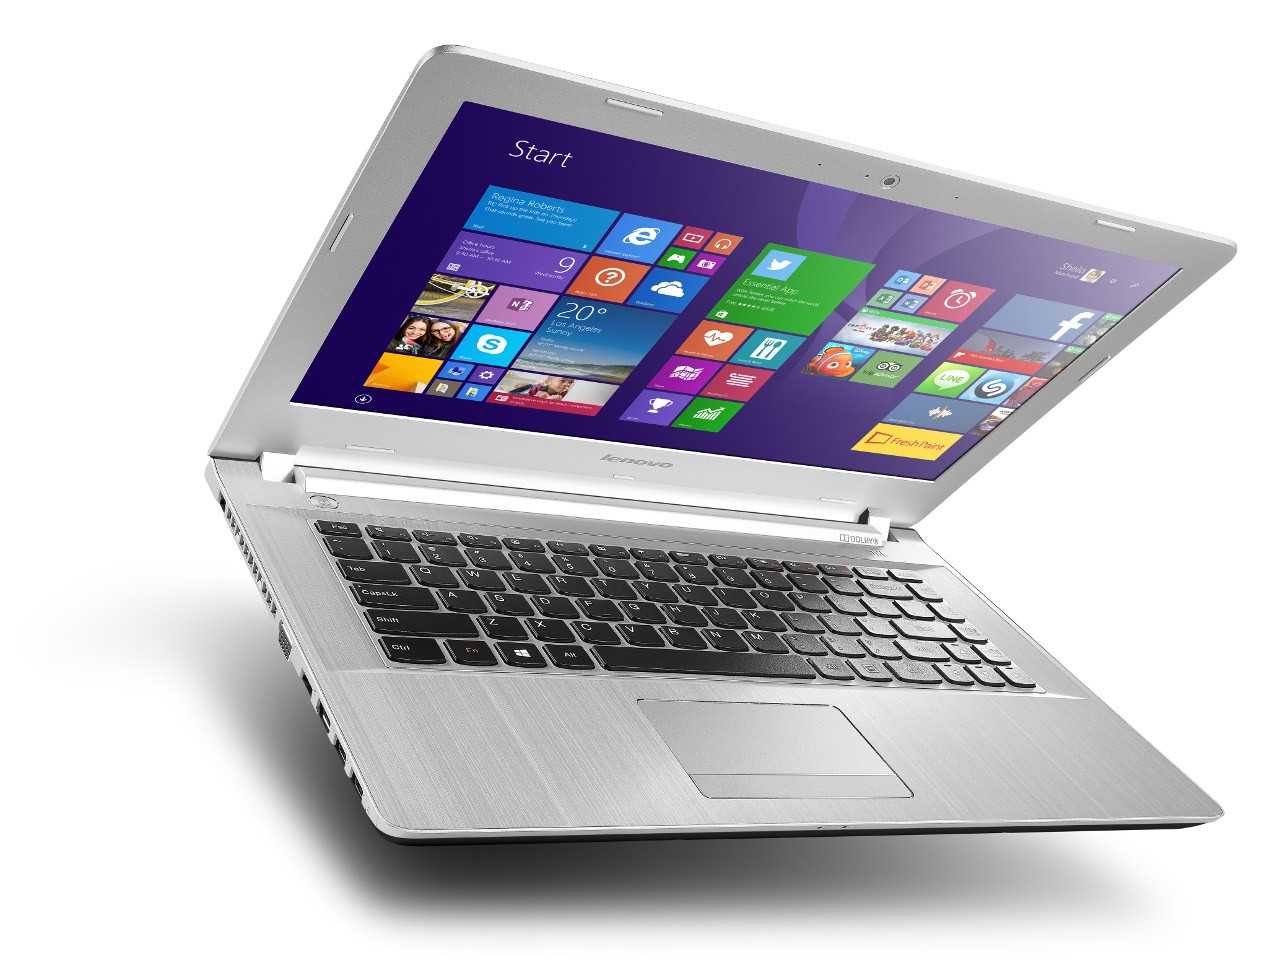 Ноутбук lenovo z50-70 (59417266) — купить, цена и характеристики, отзывы